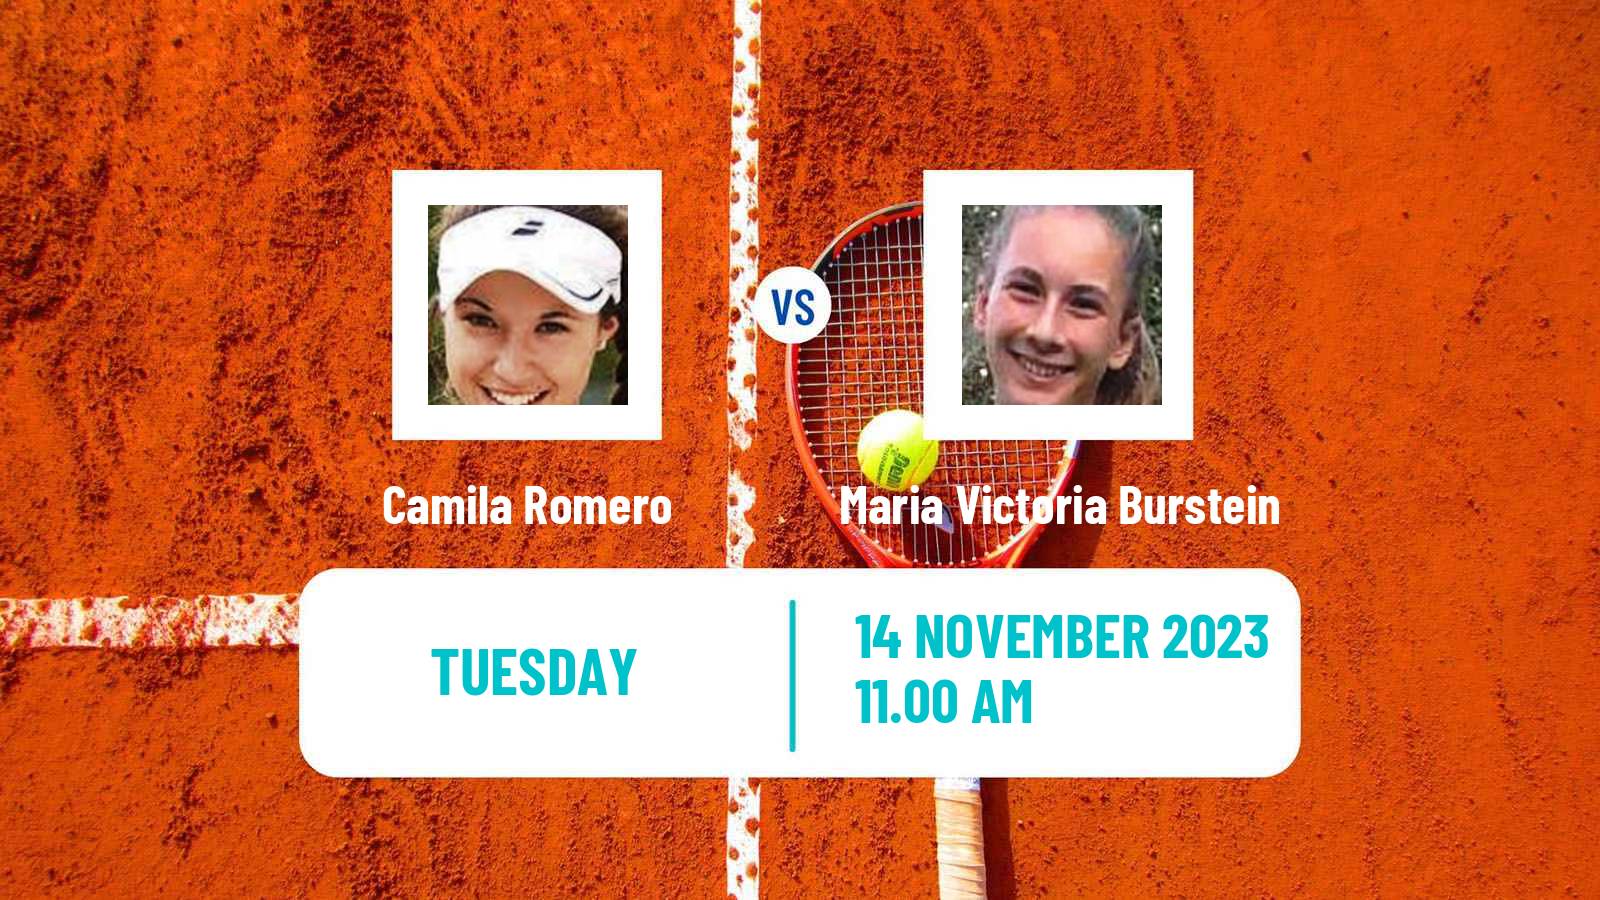 Tennis ITF W15 Buenos Aires 2 Women Camila Romero - Maria Victoria Burstein